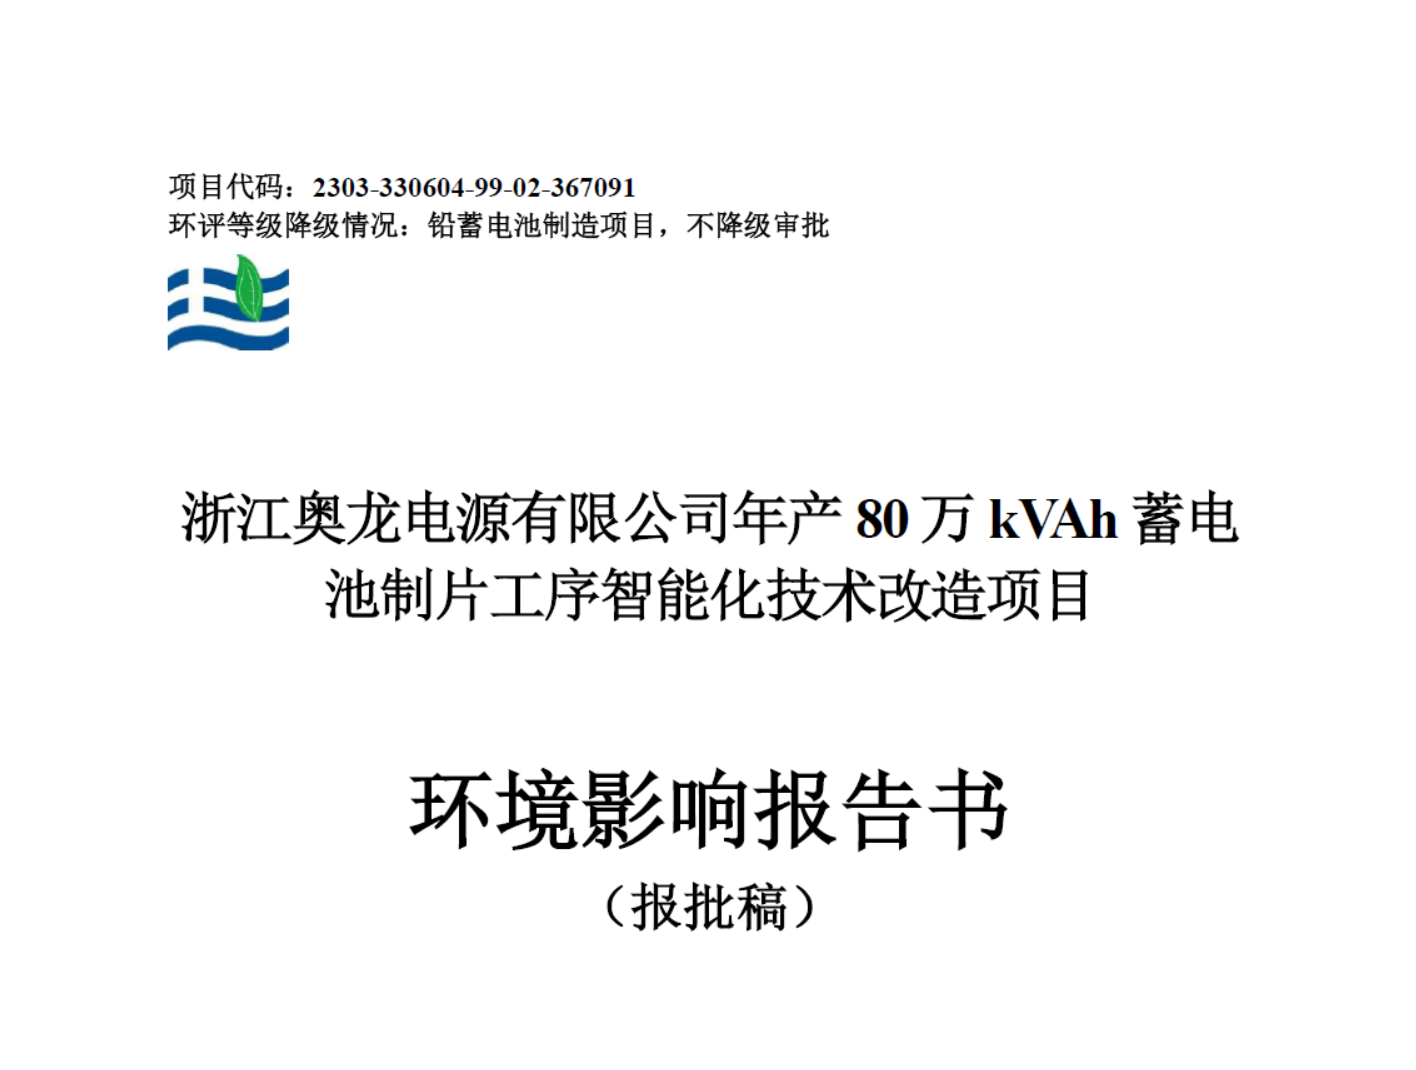 浙江奥龙电源有限公司年产80万kVAh蓄电池制片工序智能化技术改造项目环境影响报告书（公示稿）